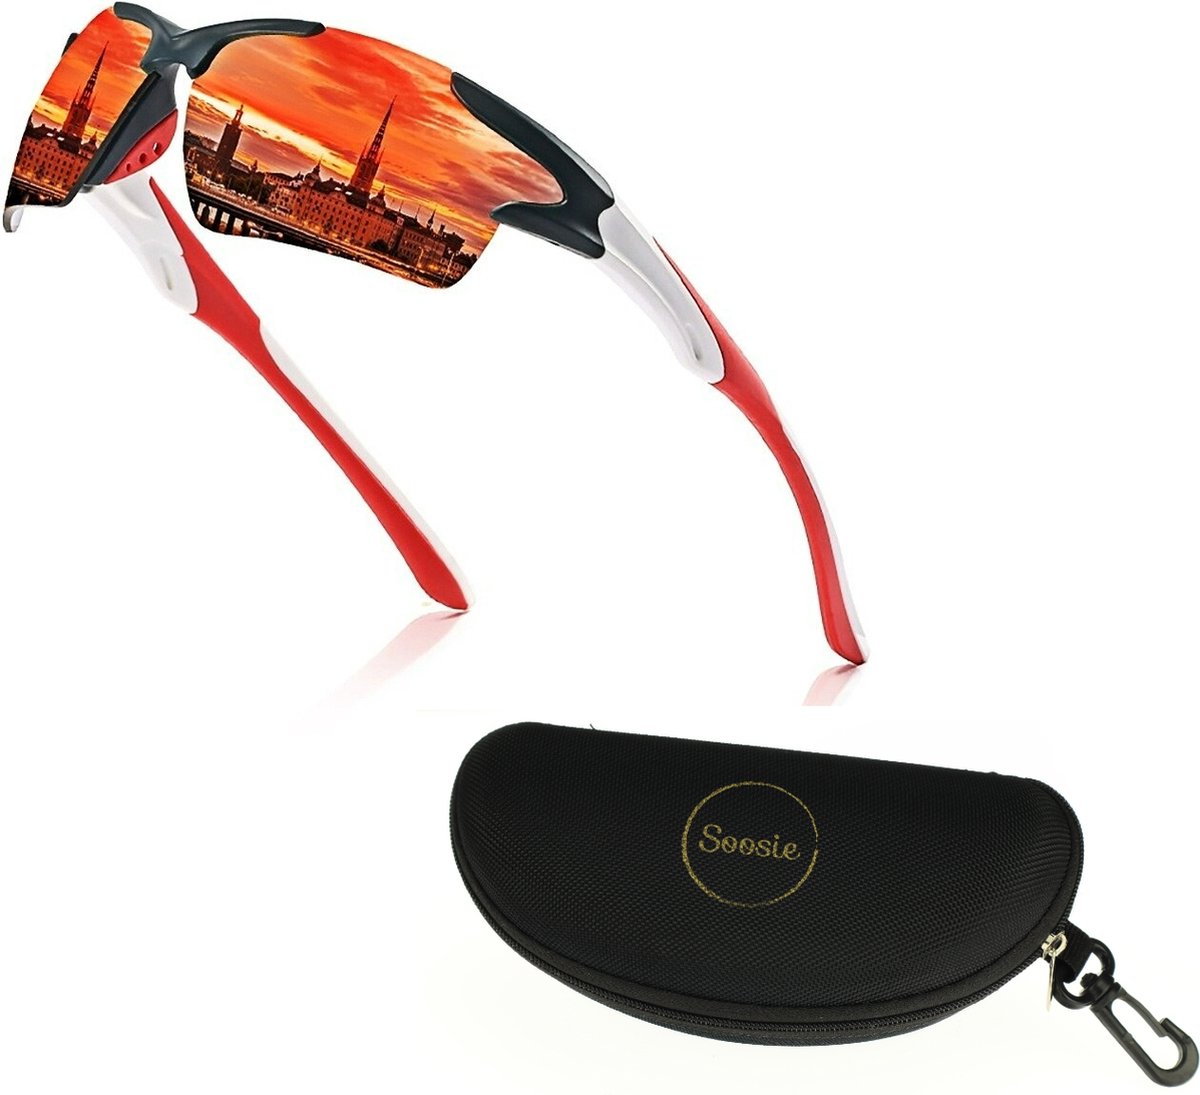 Soosie - Fietsbril - Sportbril - Gepolariseerde - Spiegelende glazen - UV Bescherming - Alle sporten - Uinisex - One size - GRATIS Brillenkoker